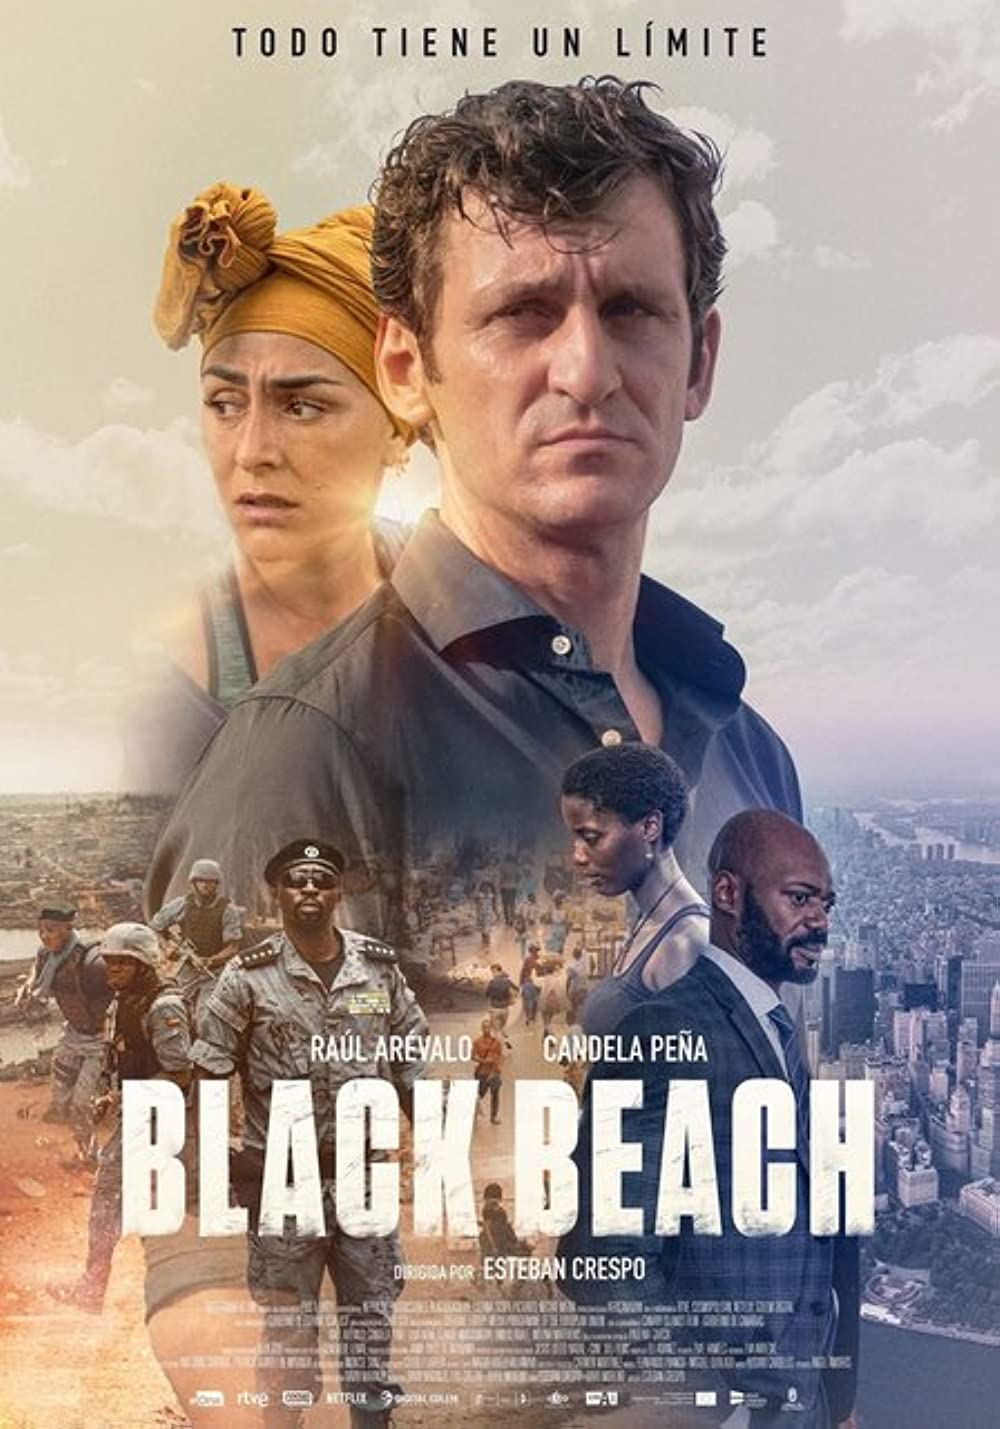 Filmbeschreibung zu Black Beach